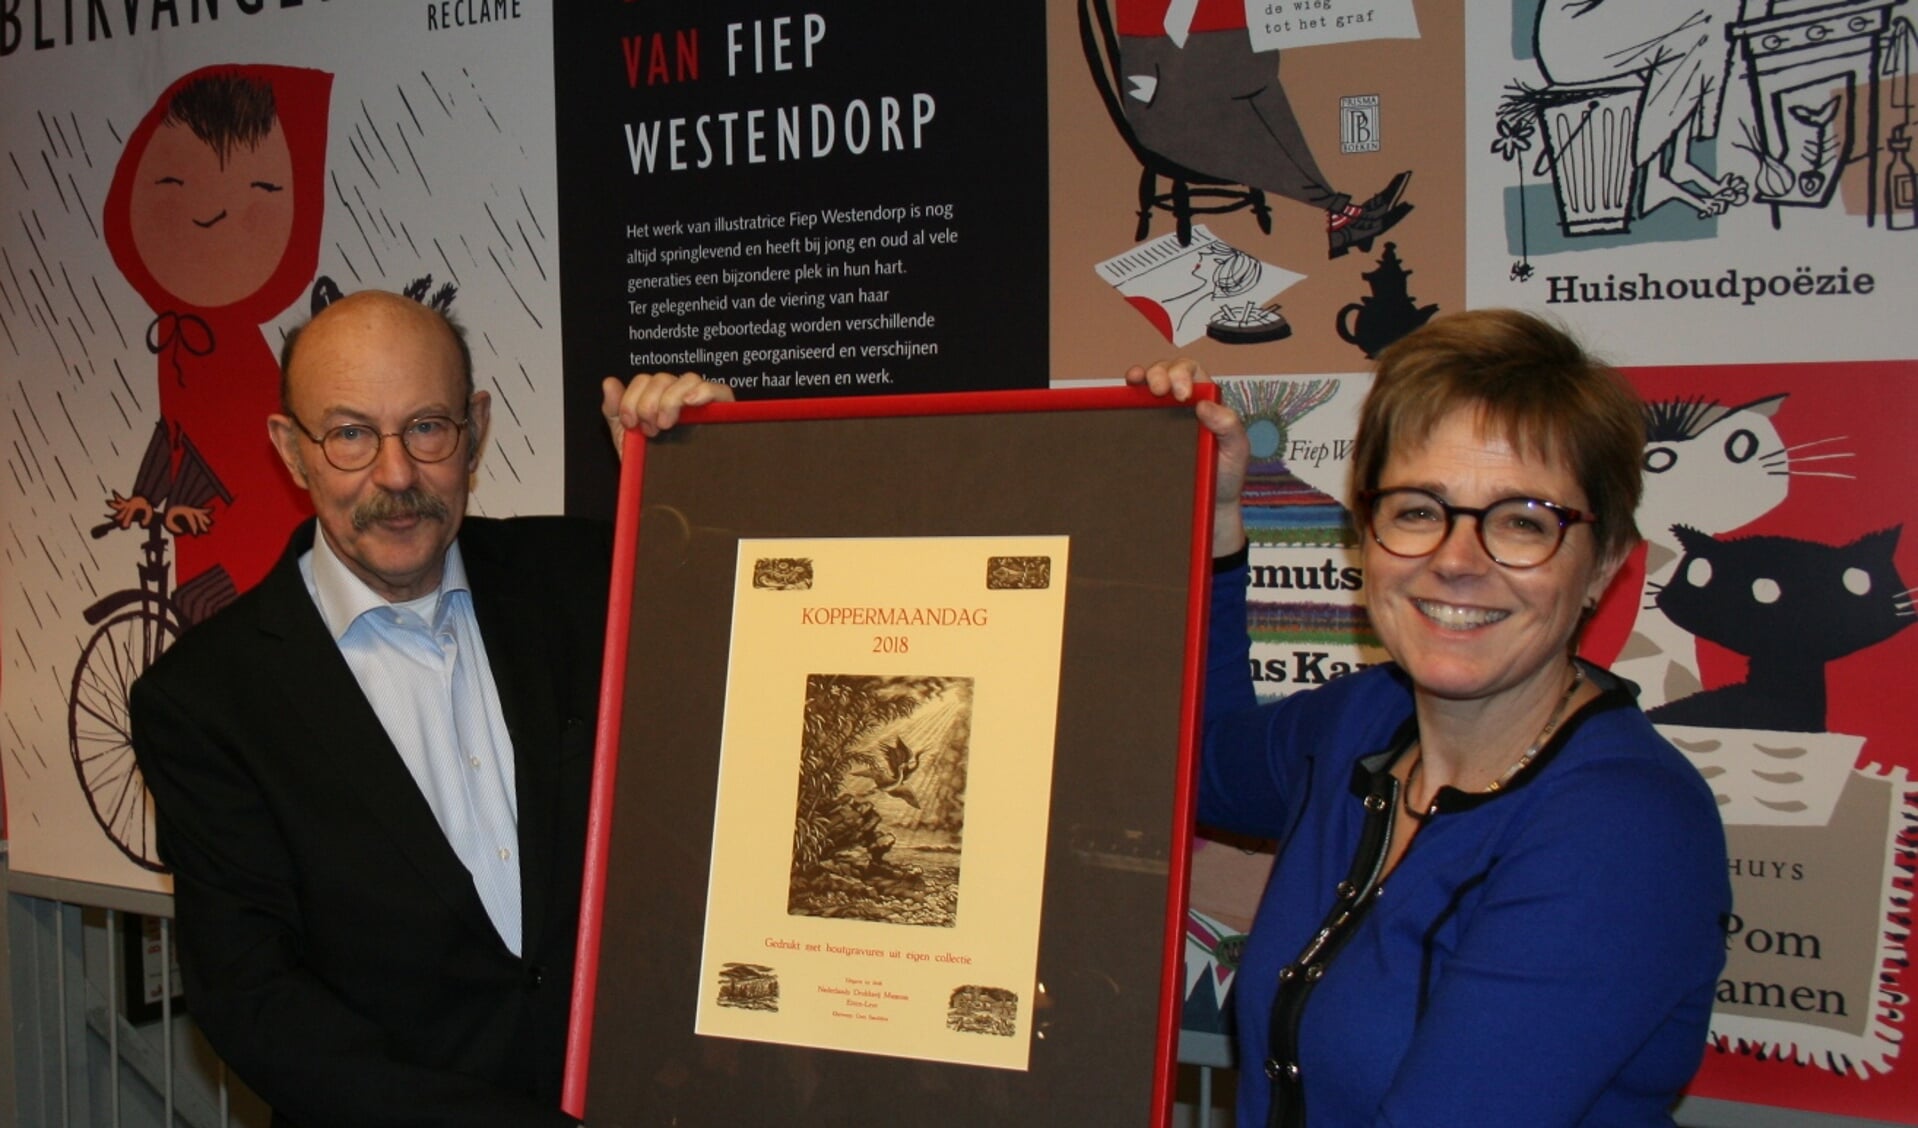 Museumvoorzitter Rien van Heck en de burgemeester met de Koppermaandagprent 2018. FOTO PETER HOUTEPEN